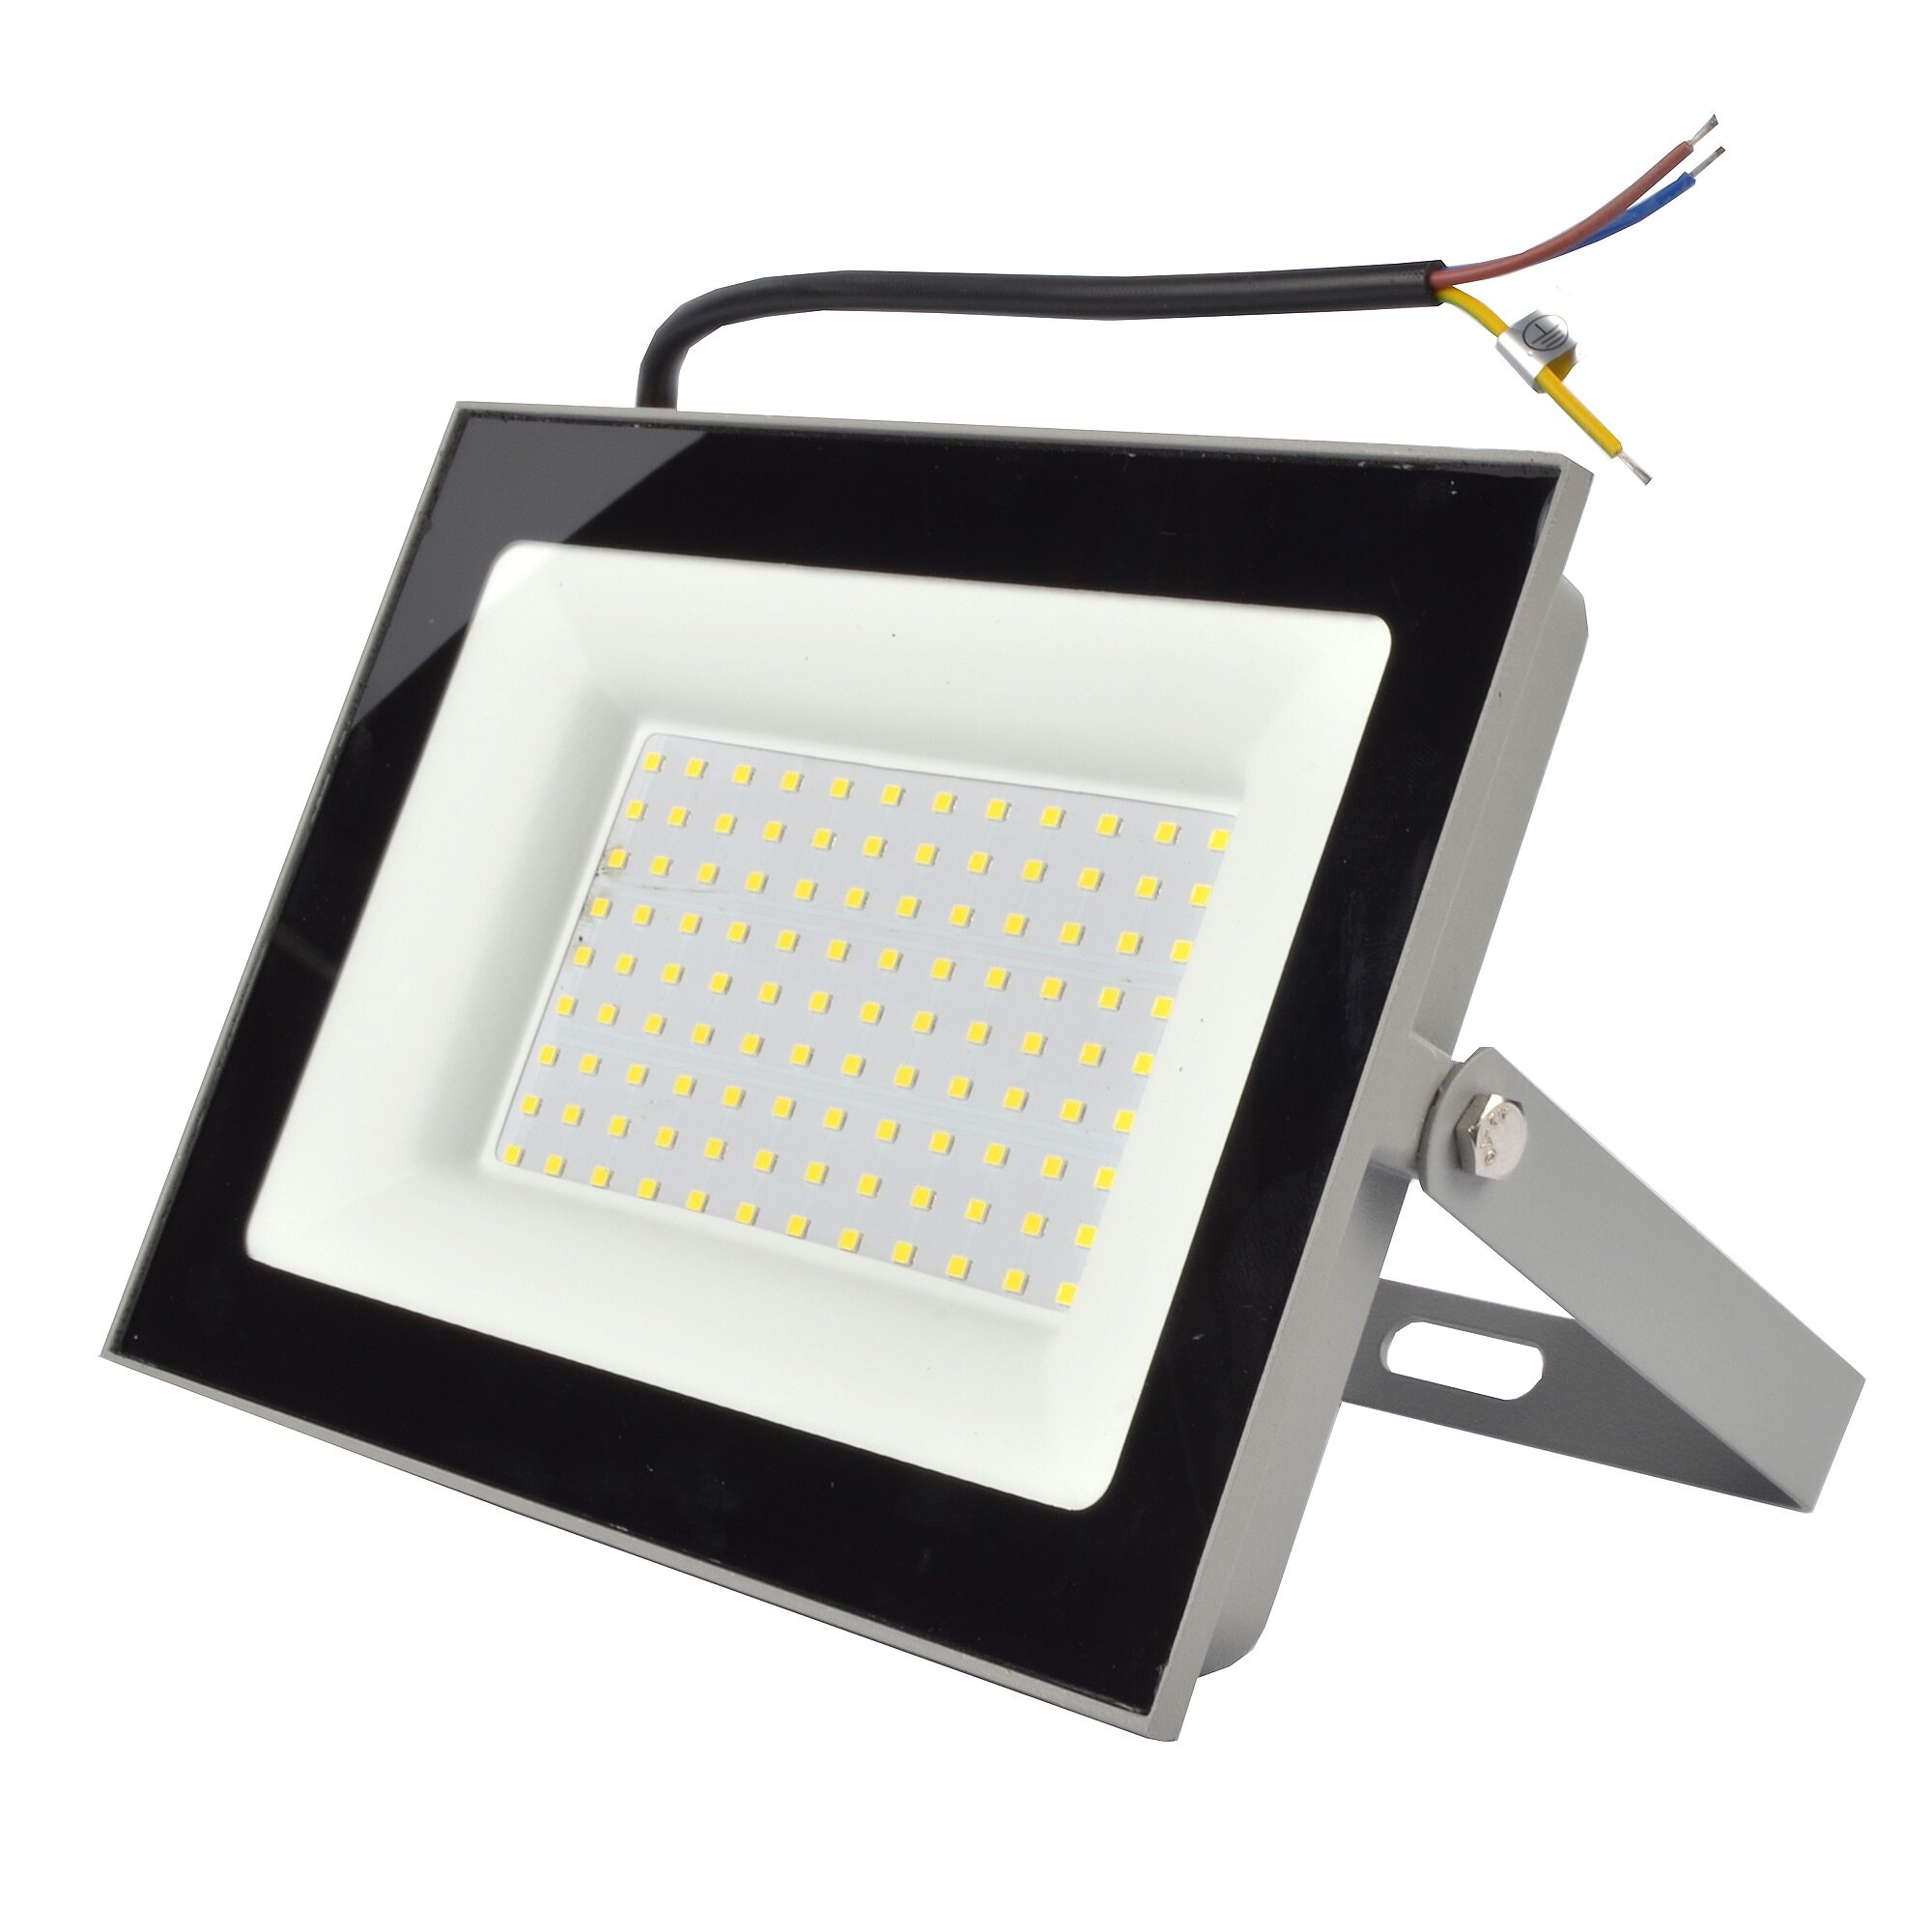 Прожектор светодиодный уличный Volpe Q516 100 Вт 6500K 8000 Лм, IP65, холодный белый свет - фото №2